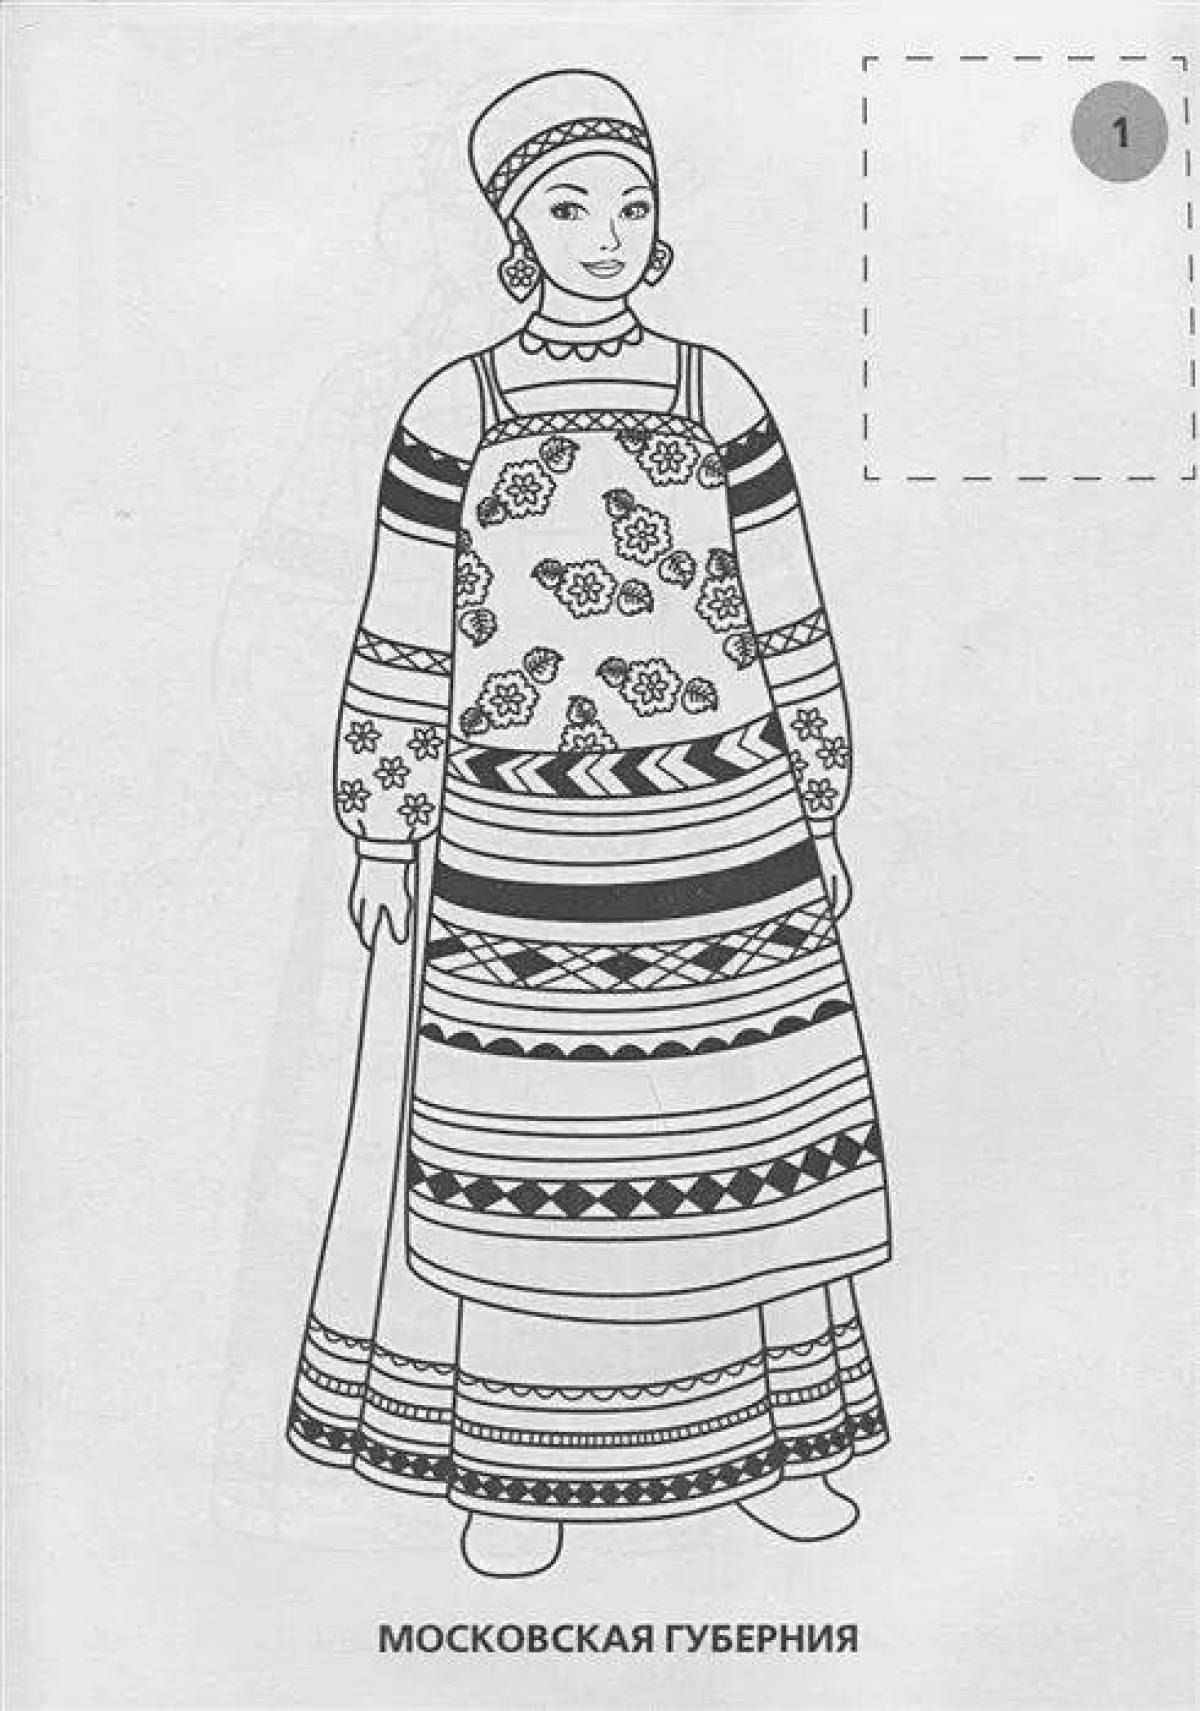 Rich Russian women's folk costume